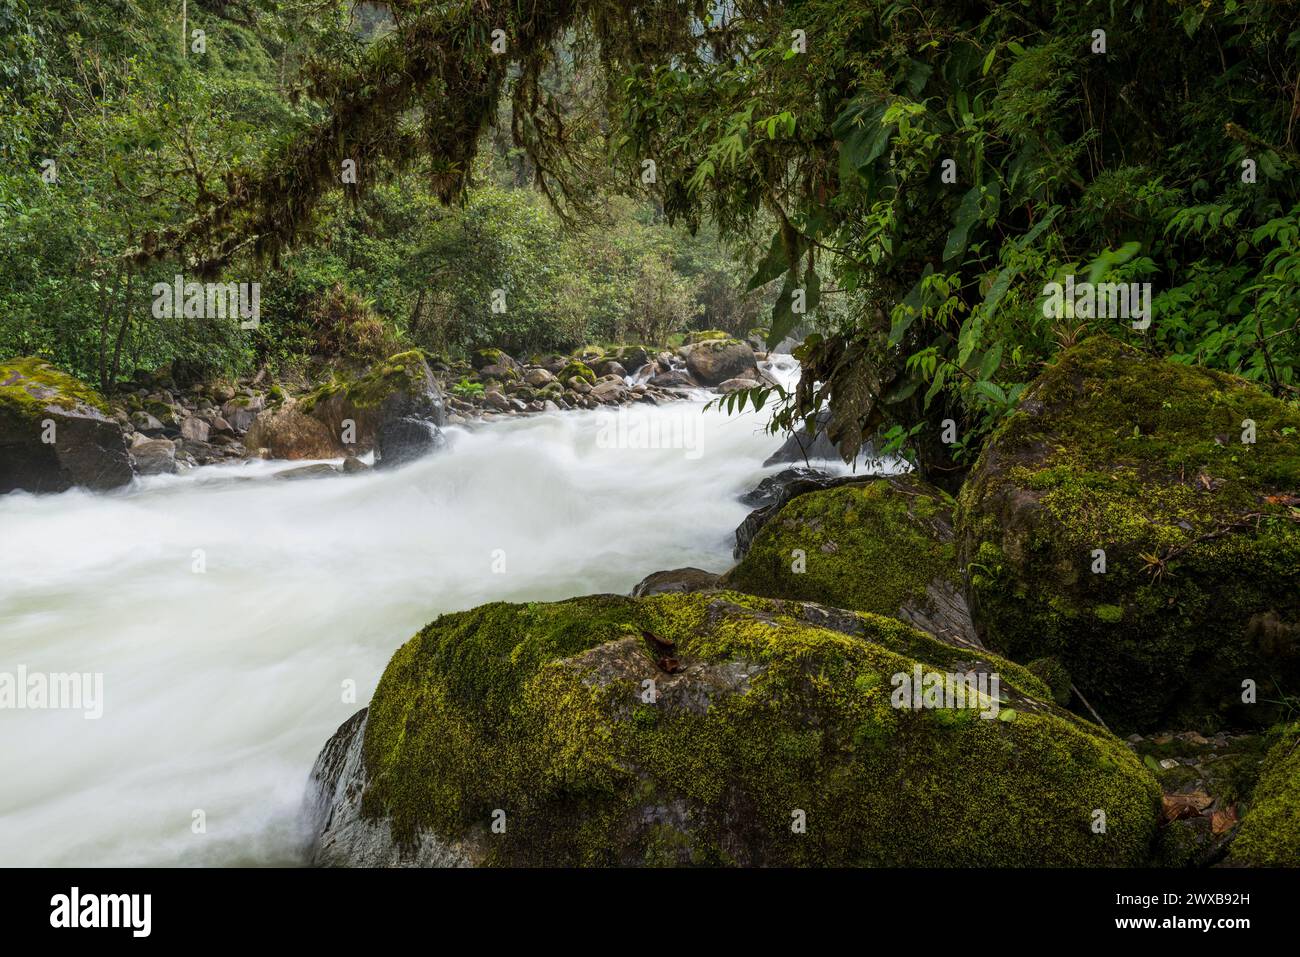 Papallacta river, Papallacta area, Ecuador Andes, Ecuador,South America Stock Photo